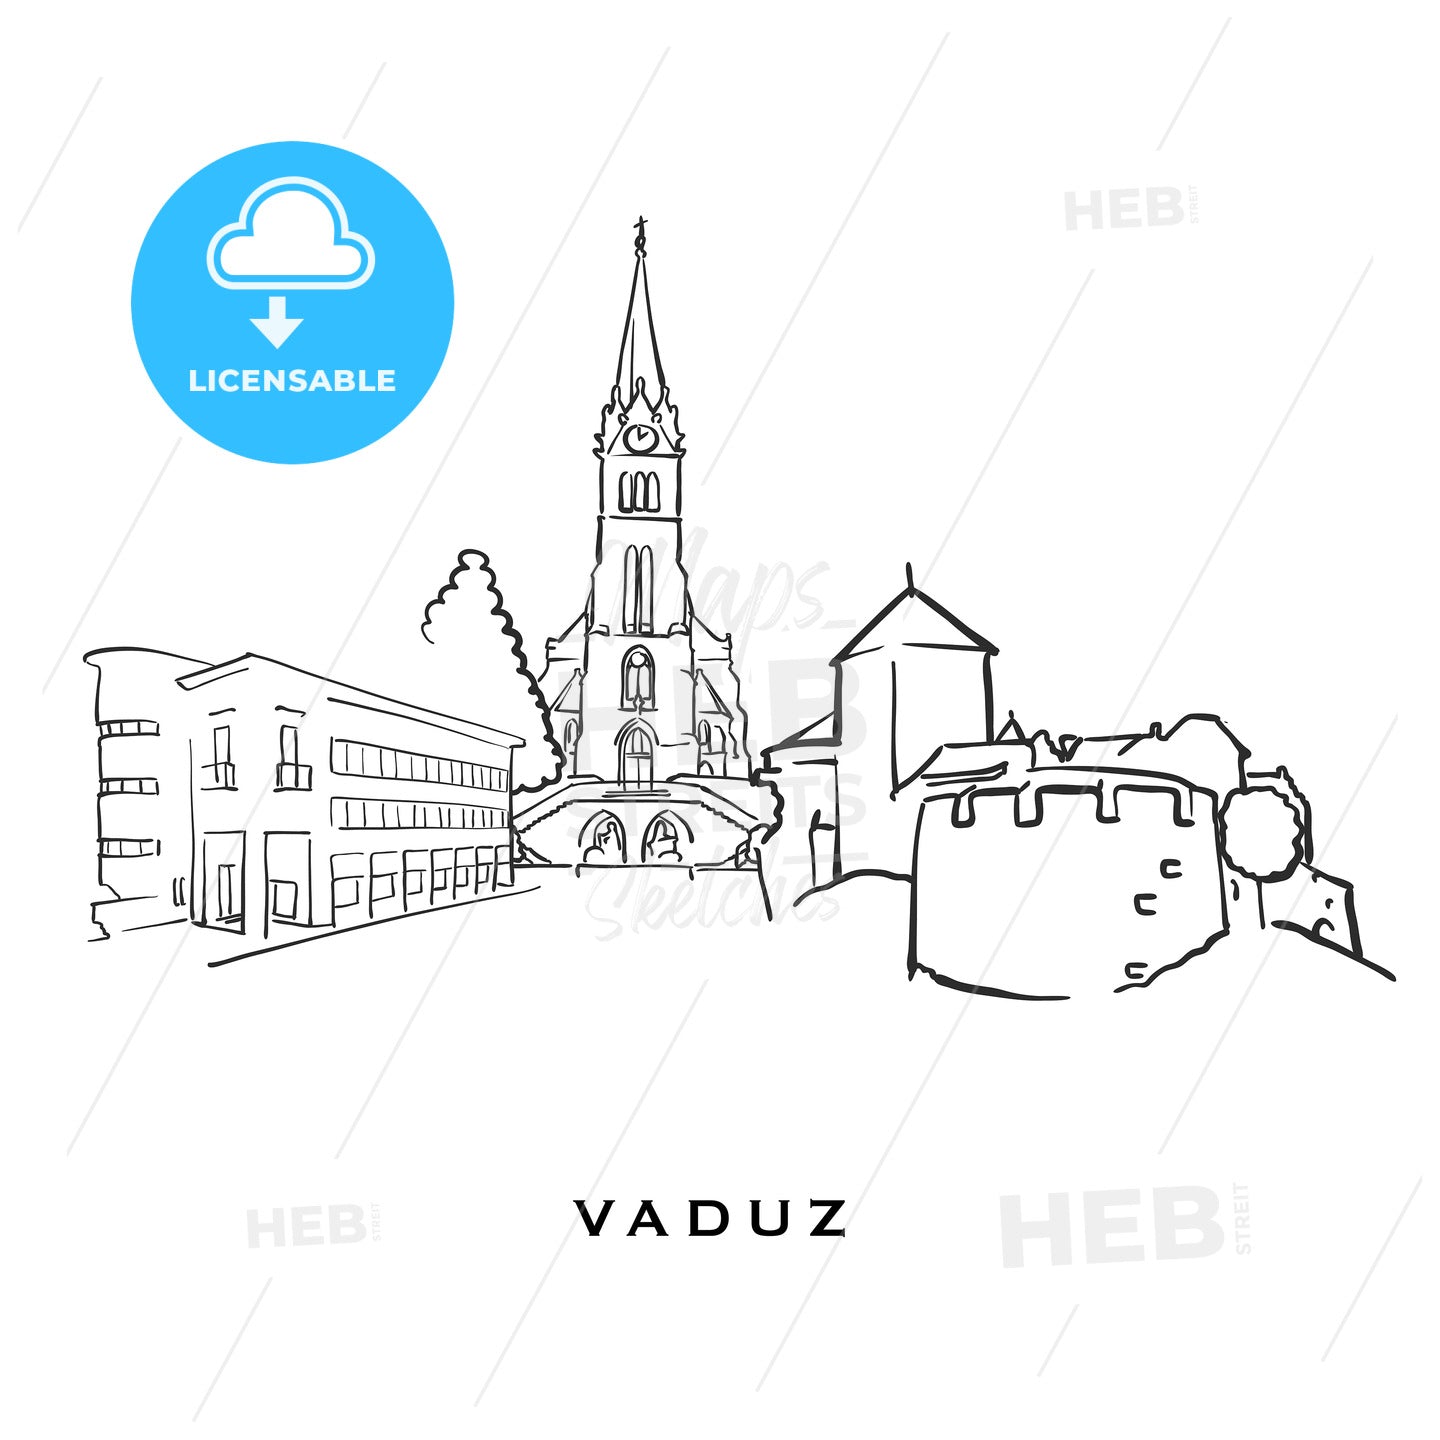 Vaduz Liechtenstein famous architecture – instant download